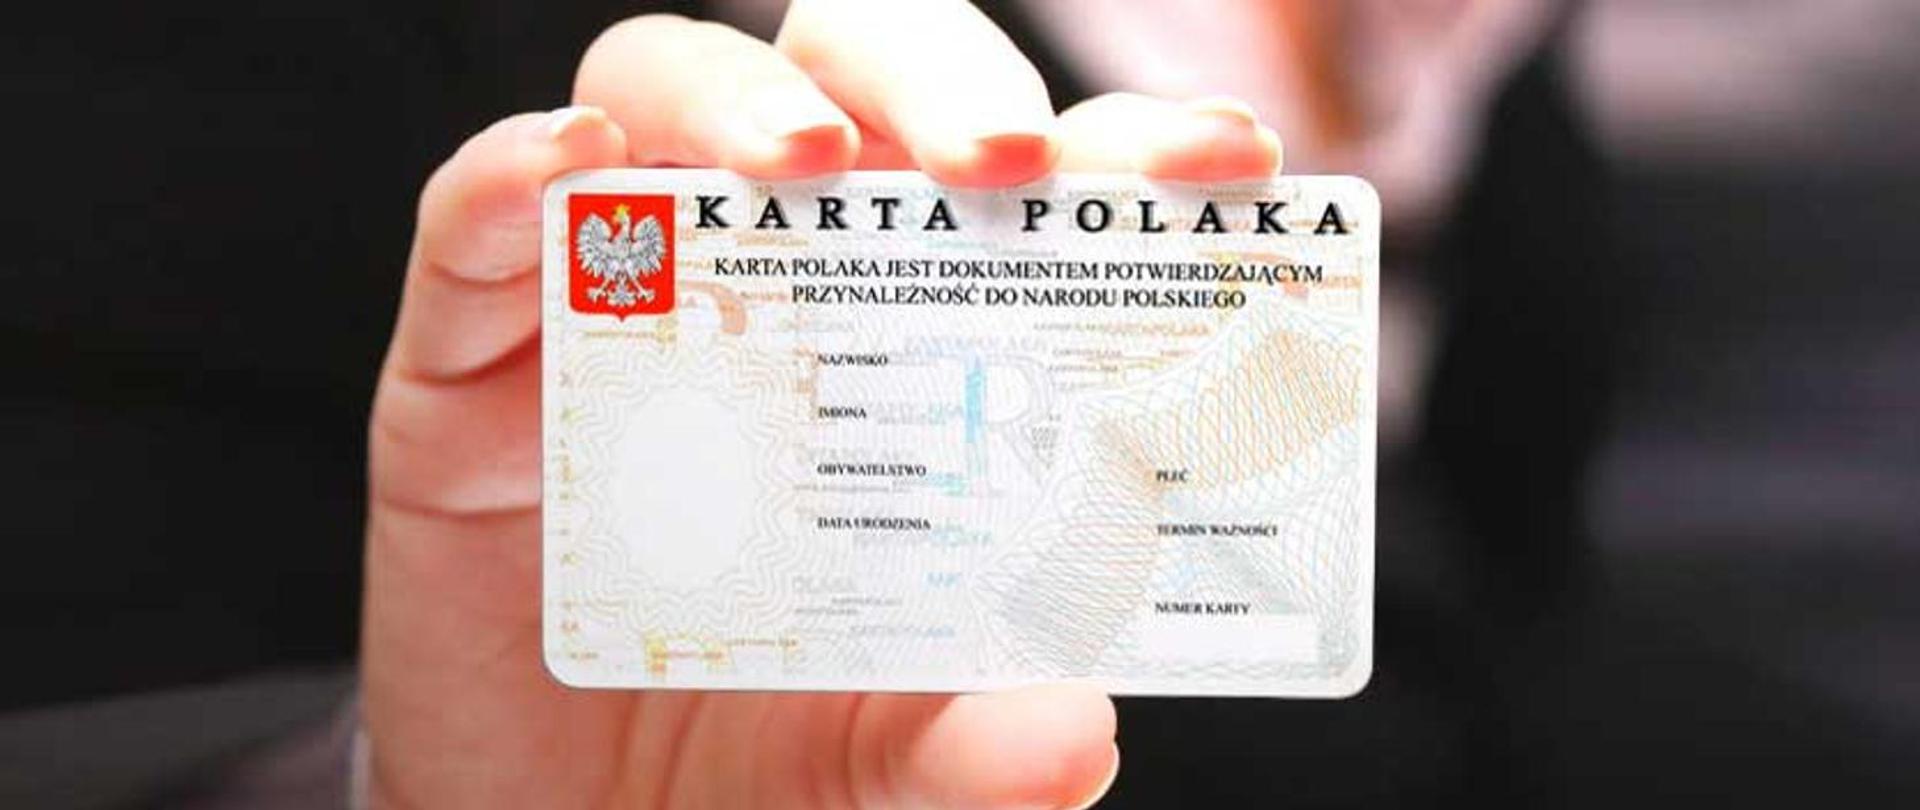 Trwa rejestracja zgłoszeń dotyczących uzyskania Karty Polaka